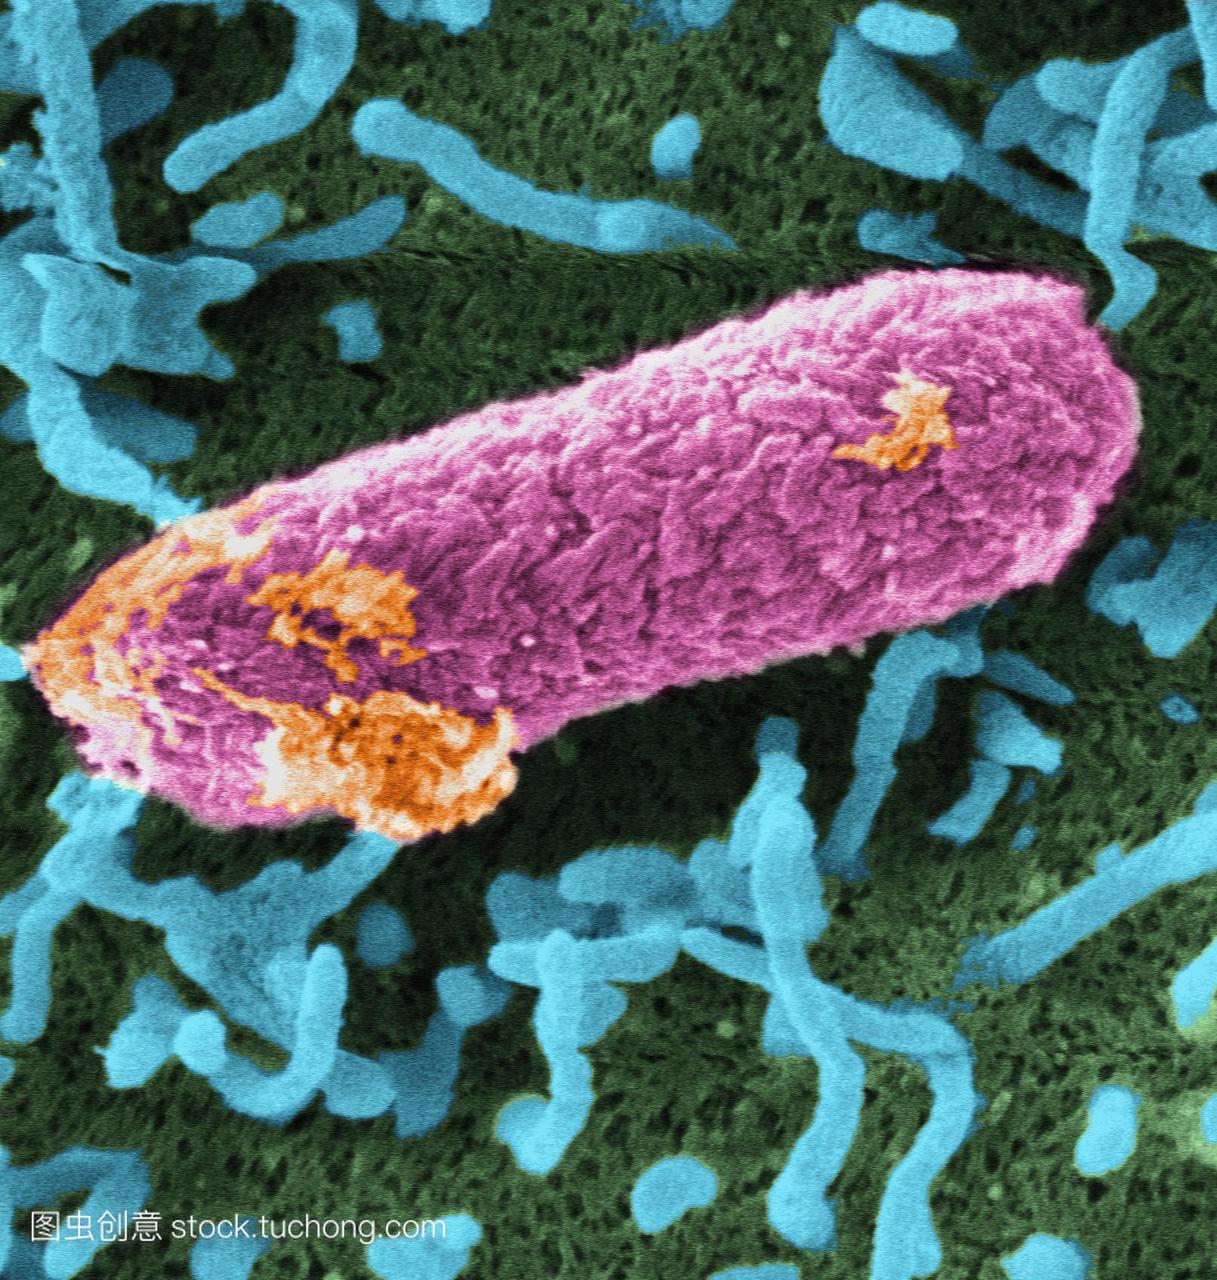 肠杆菌菌株会产生一种强大的毒素,导致腹部绞